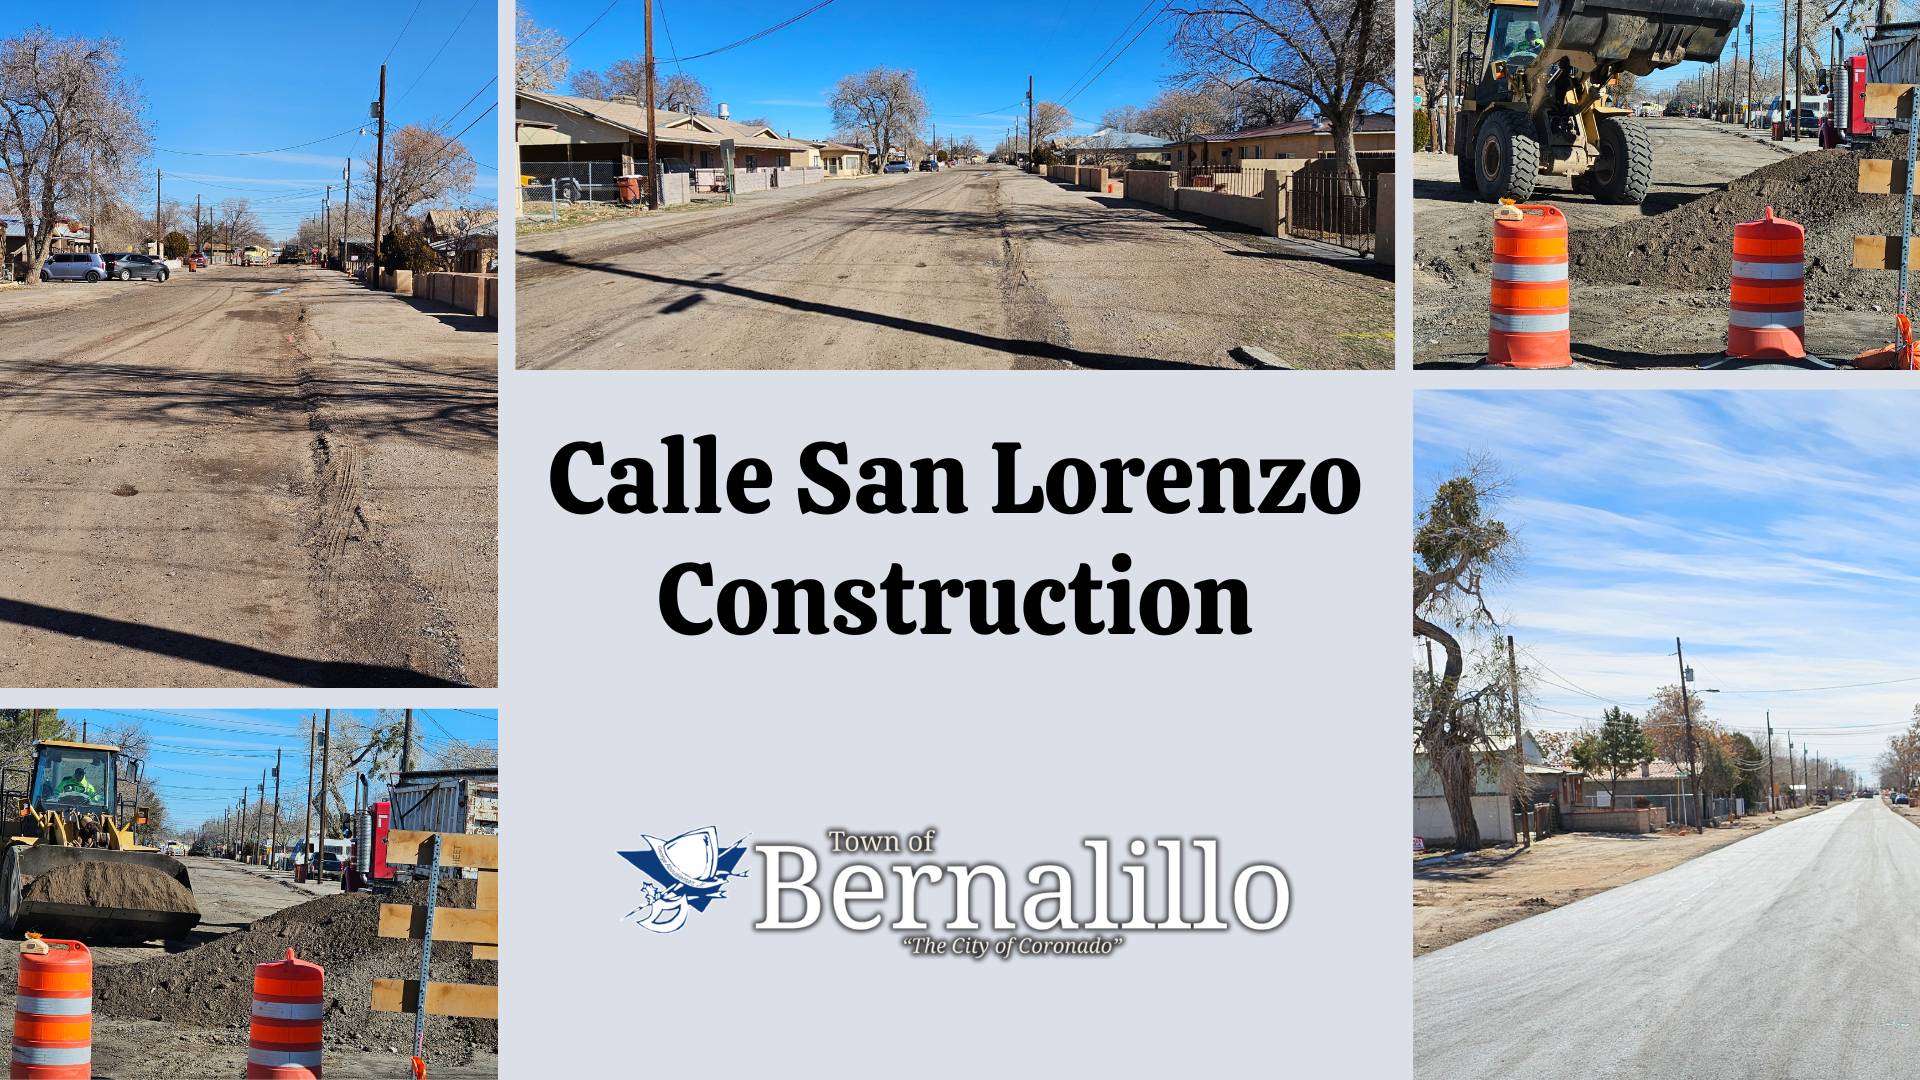 Calle San Lorenzo Construction  - Copy